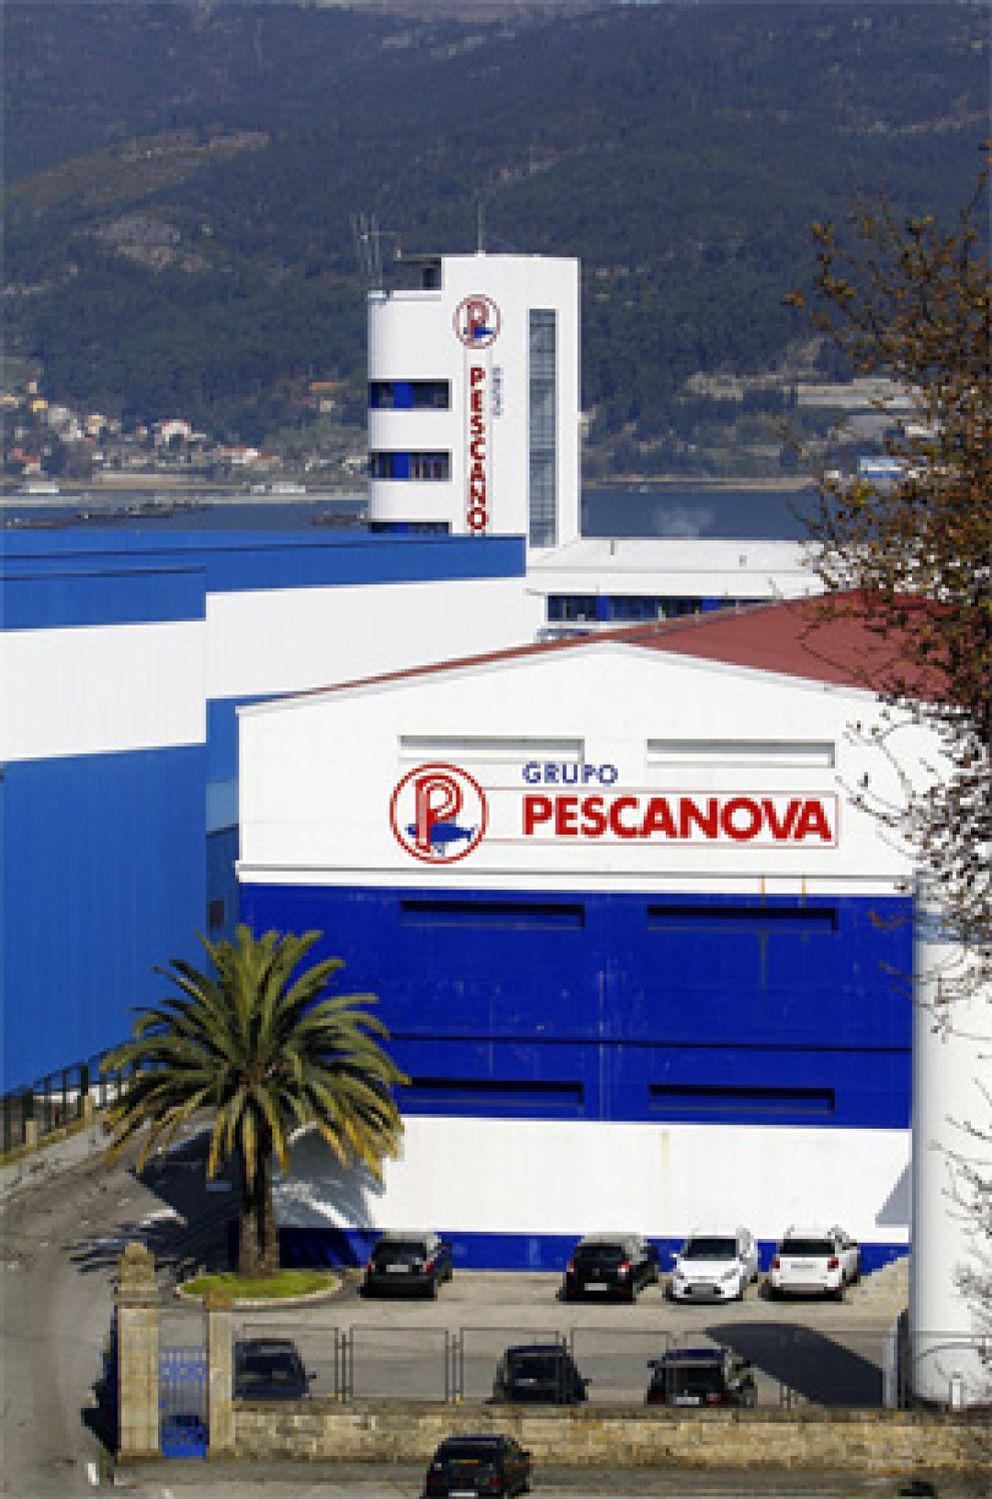 Foto: Los acreedores de Pescanova encargan a KPMG que destripe su contabilidad B